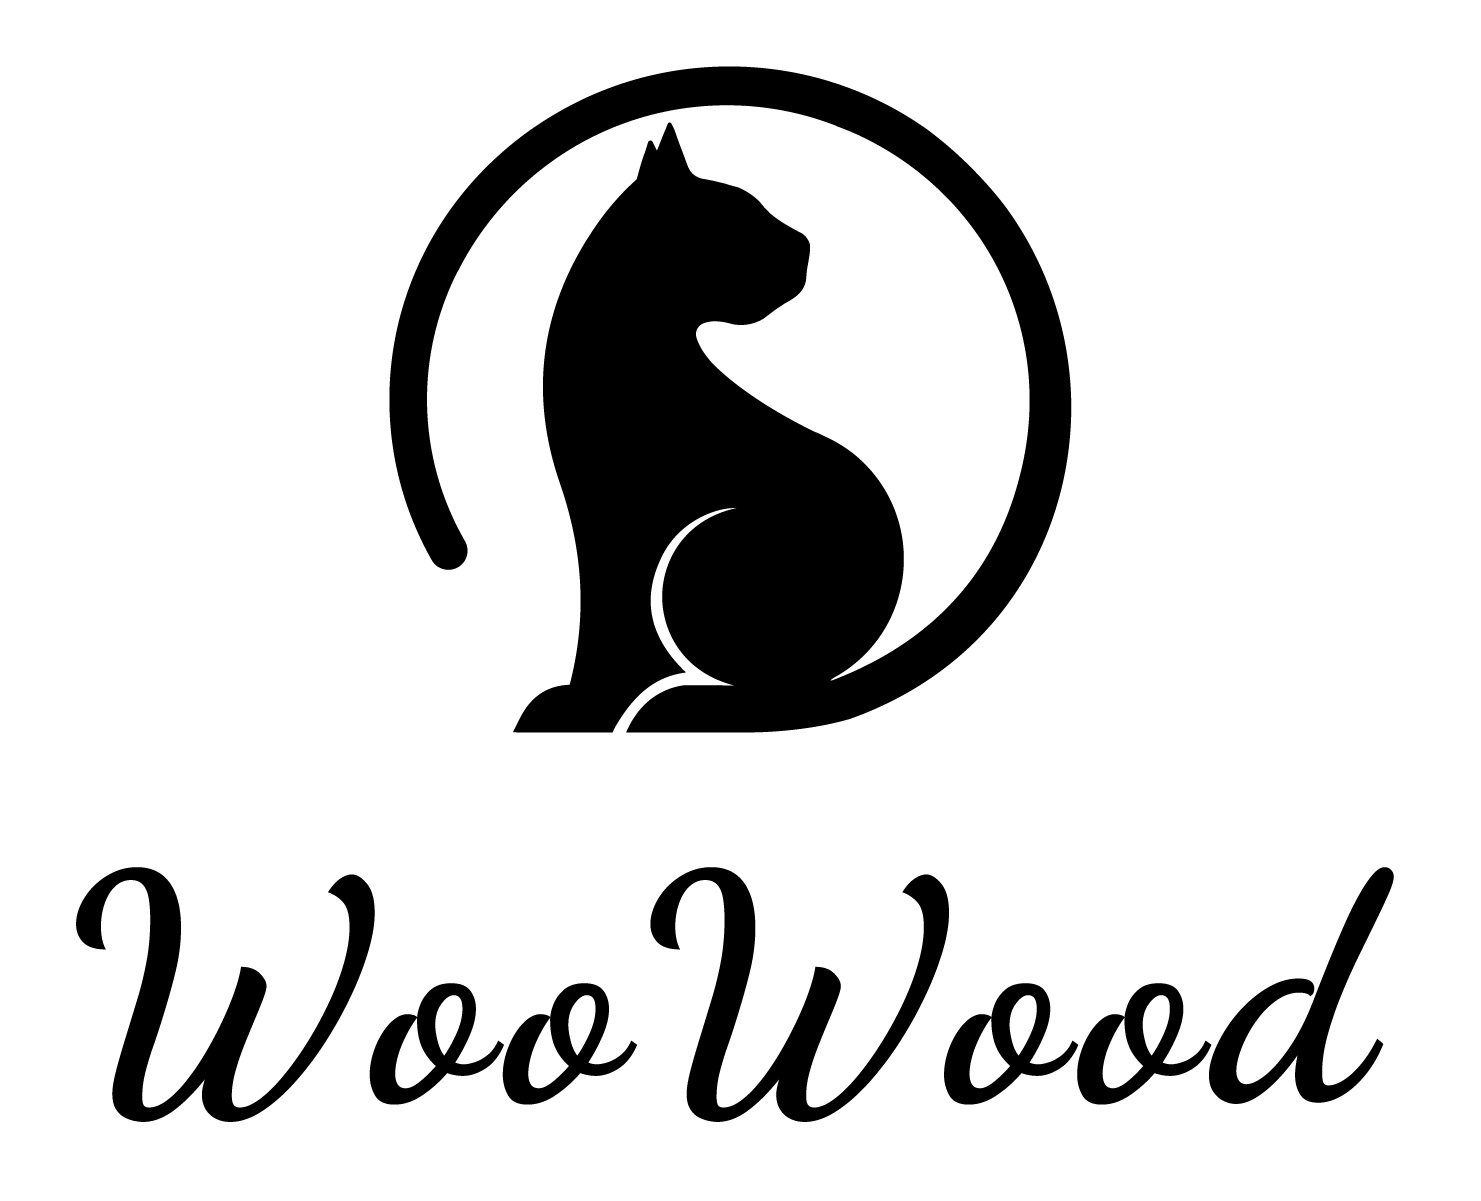 WOOWOOD